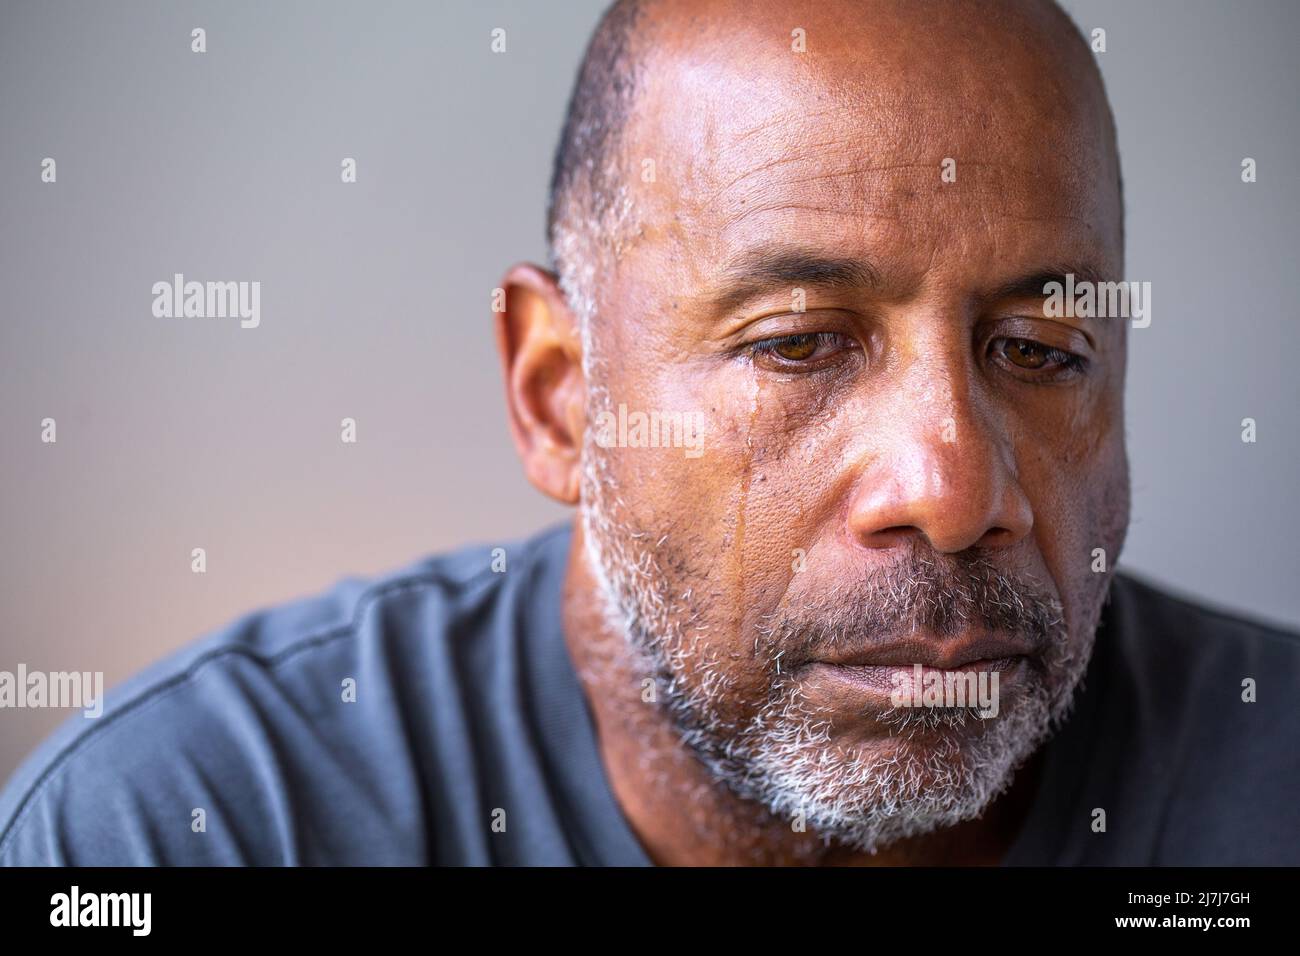 Retrato de un hombre maduro que se ve triste con lágrimas en sus ojos. Foto de stock